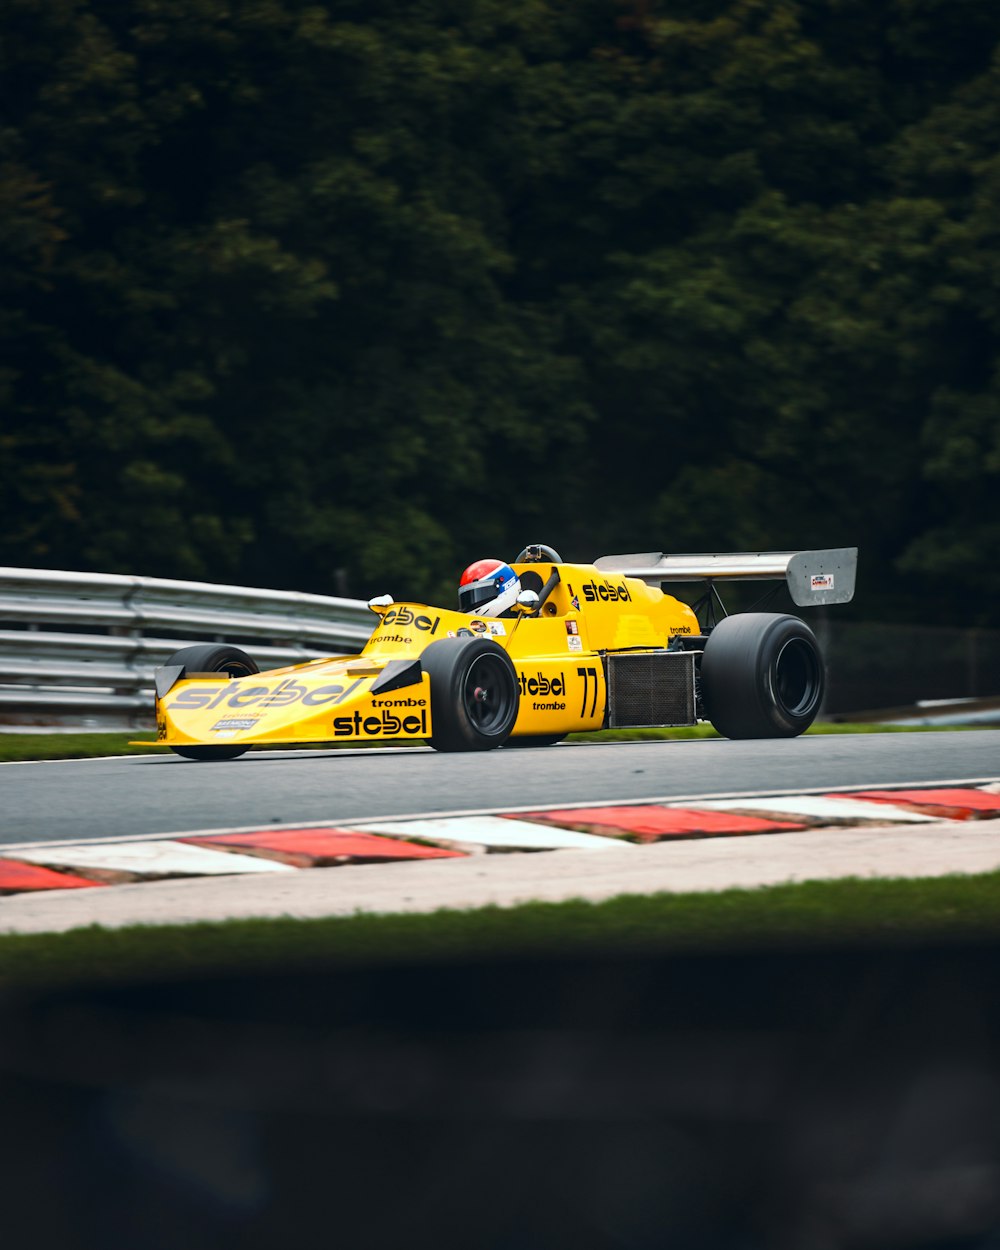 Voiture de F1 jaune et noire en piste pendant la journée